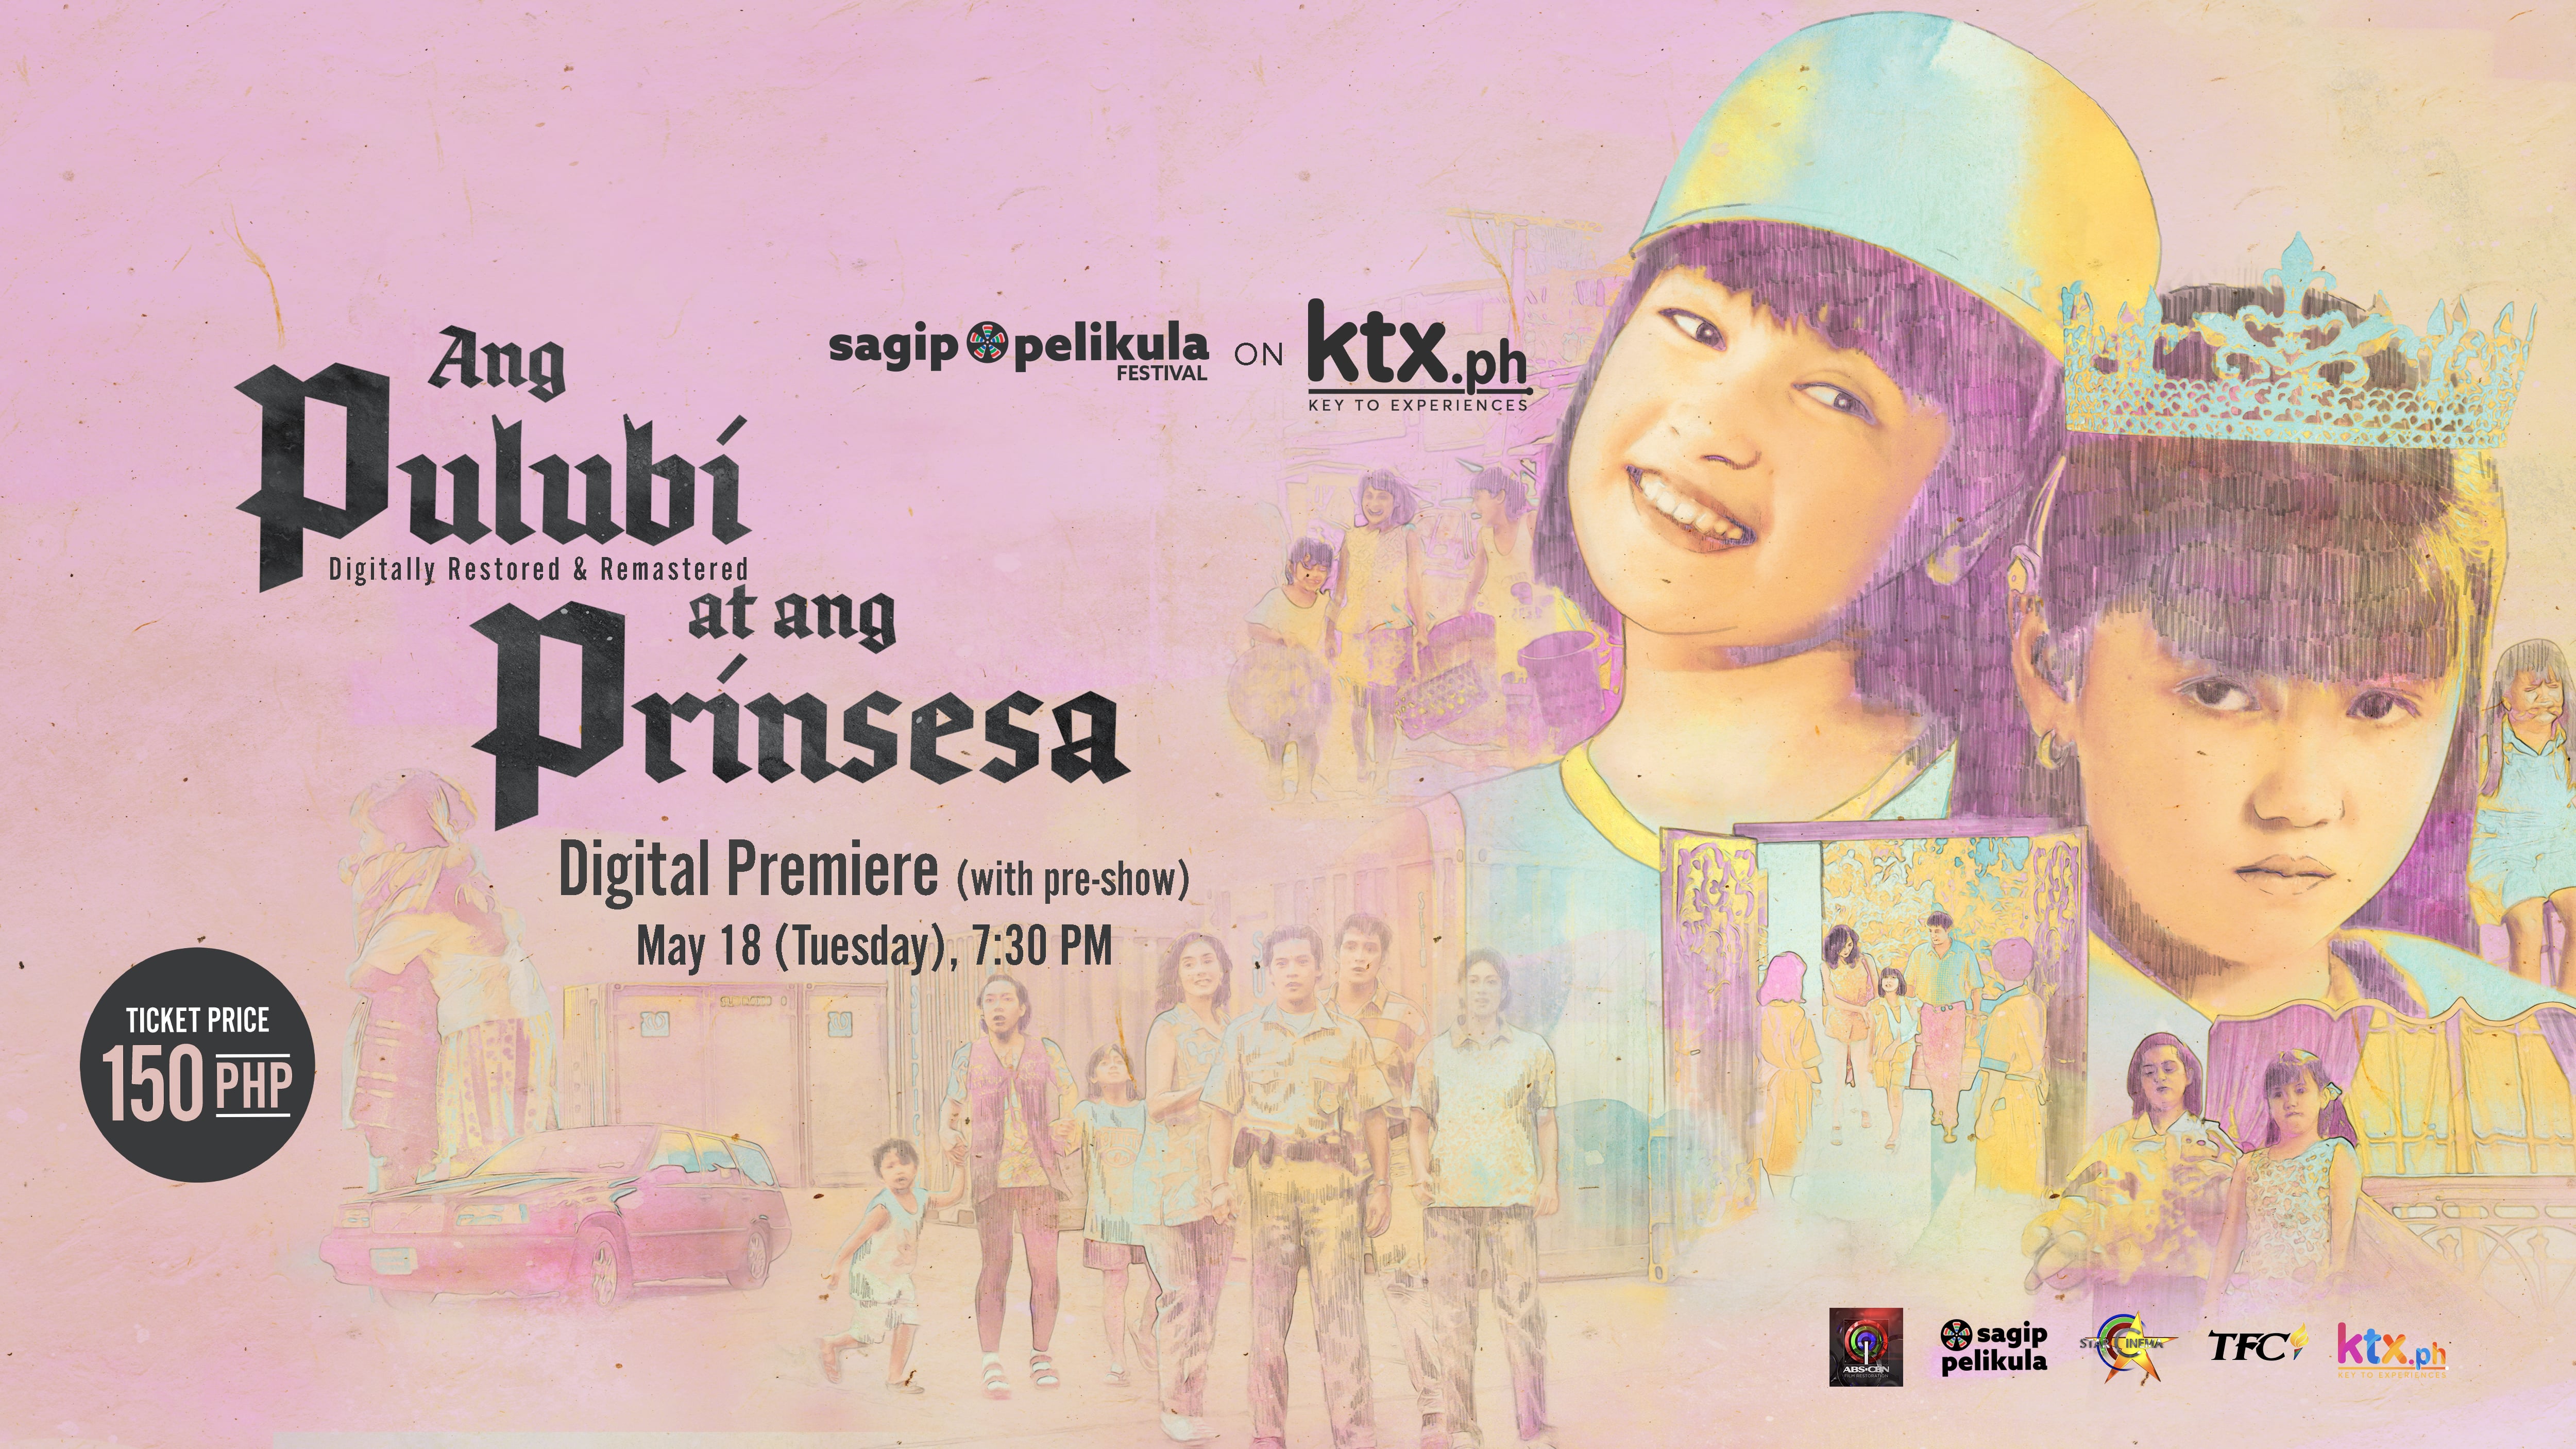 Camille Prats and Angelica Panganiban's 'Ang Pulubi at ang Prinsesa' showing on KTX